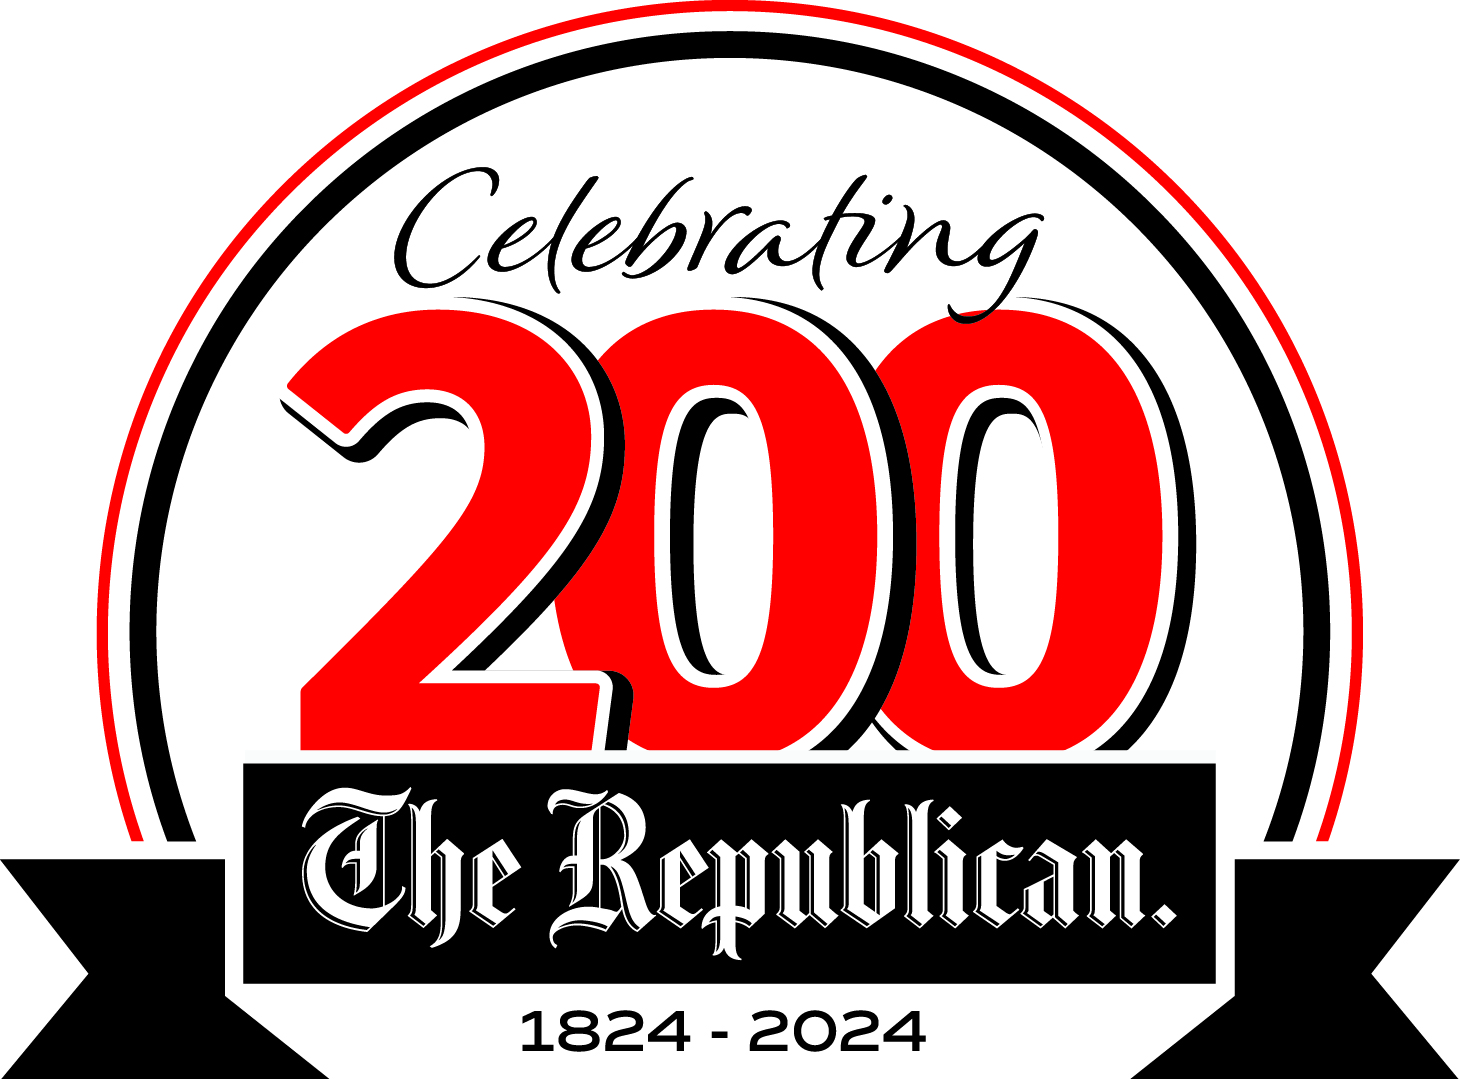 Celebrando 200 El Republicano Logo.jpg